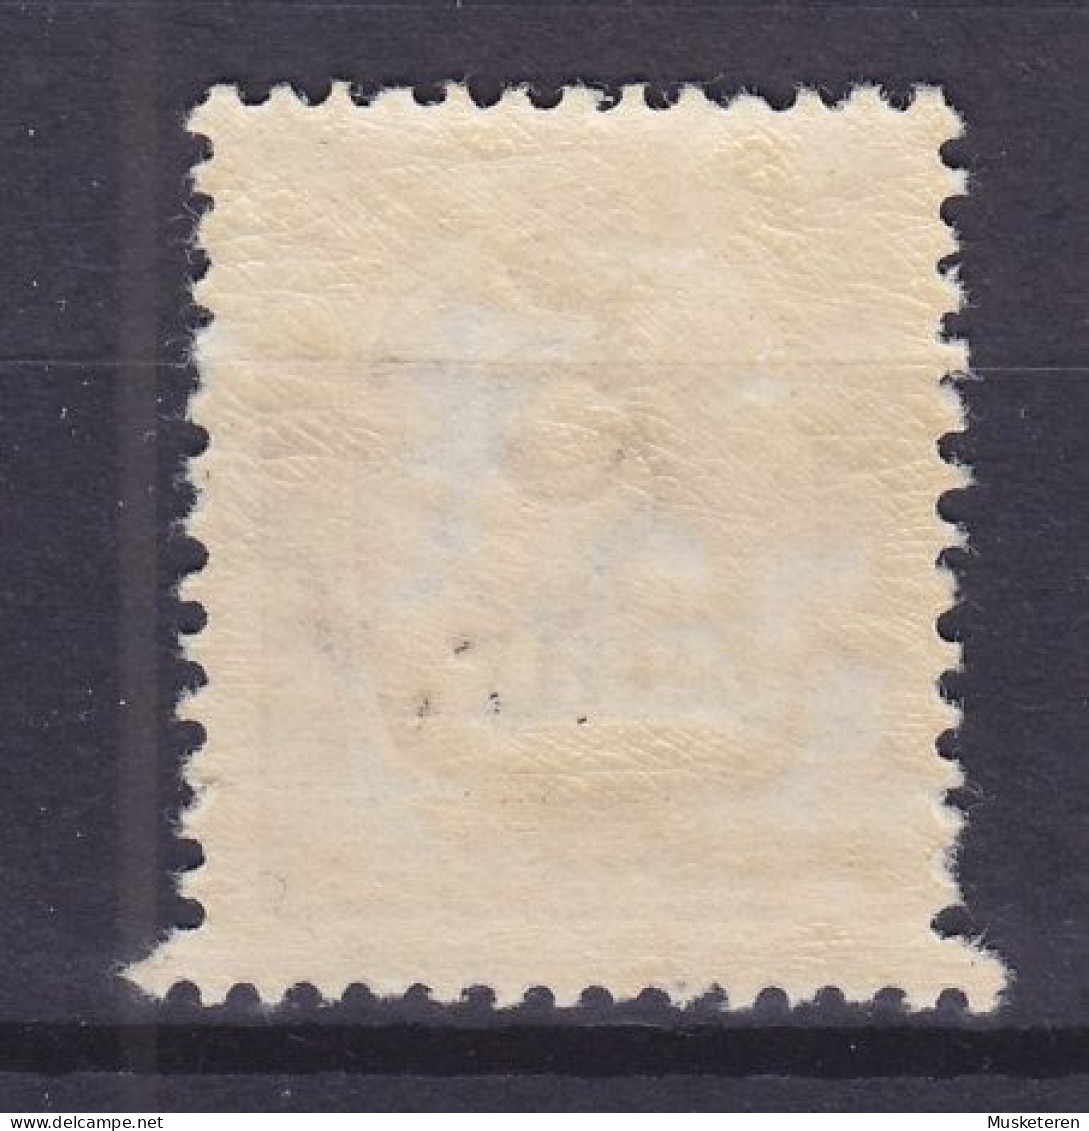 Iceland 1922 Mi. 104, 5 Aur Auf 16 Aur Overprinted Aufdruck, ERROR Variety Big 'Teeth' MH* (2 Scans) - Unused Stamps